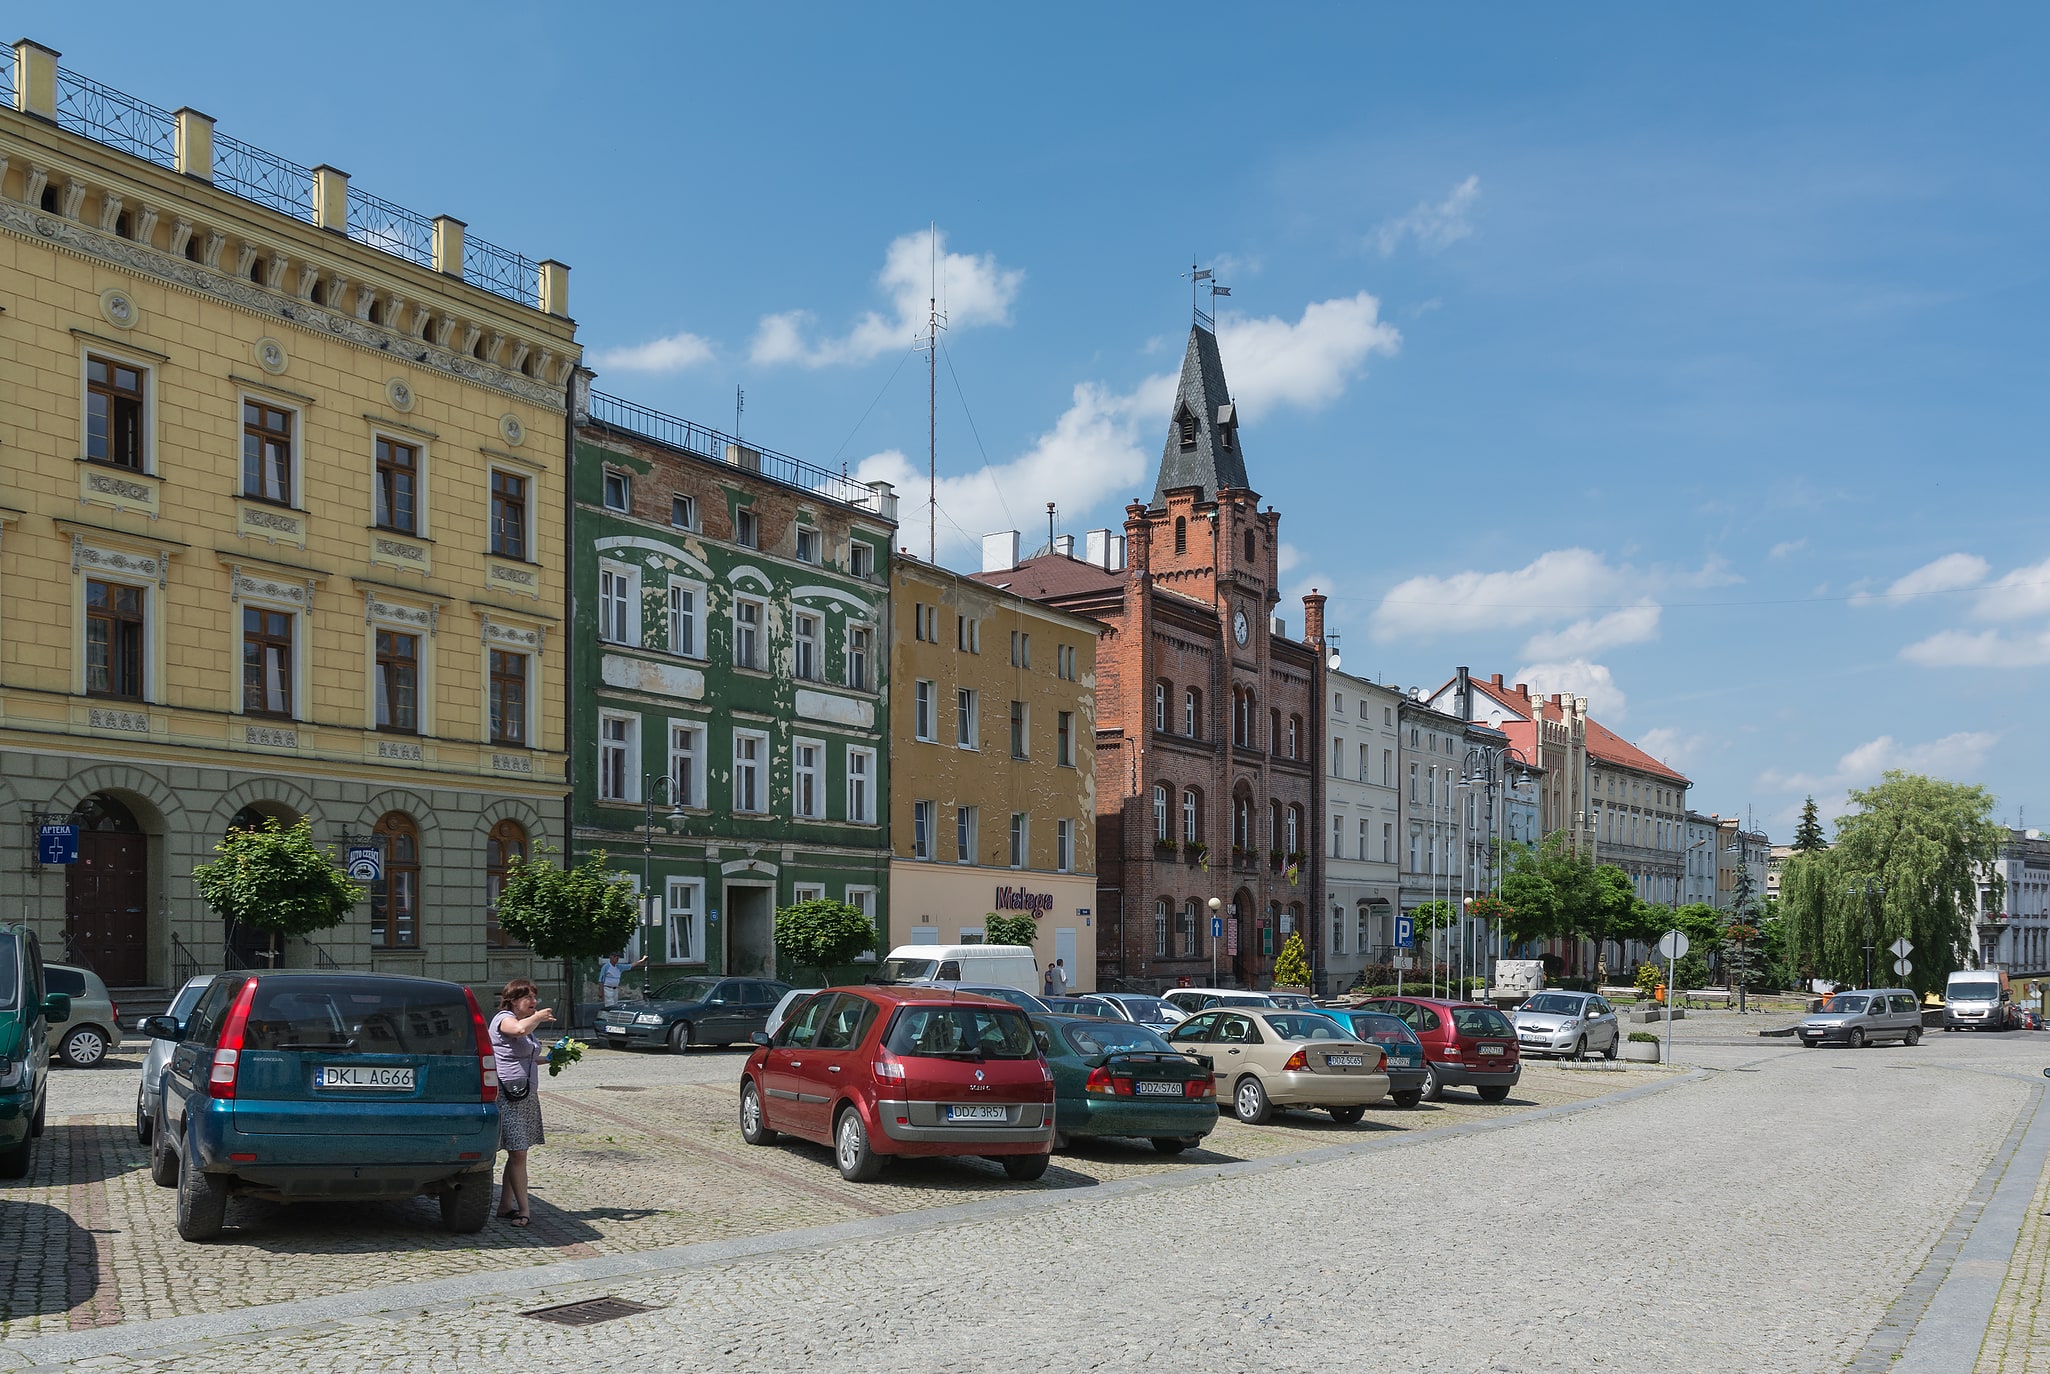 Niemcza, Polonia